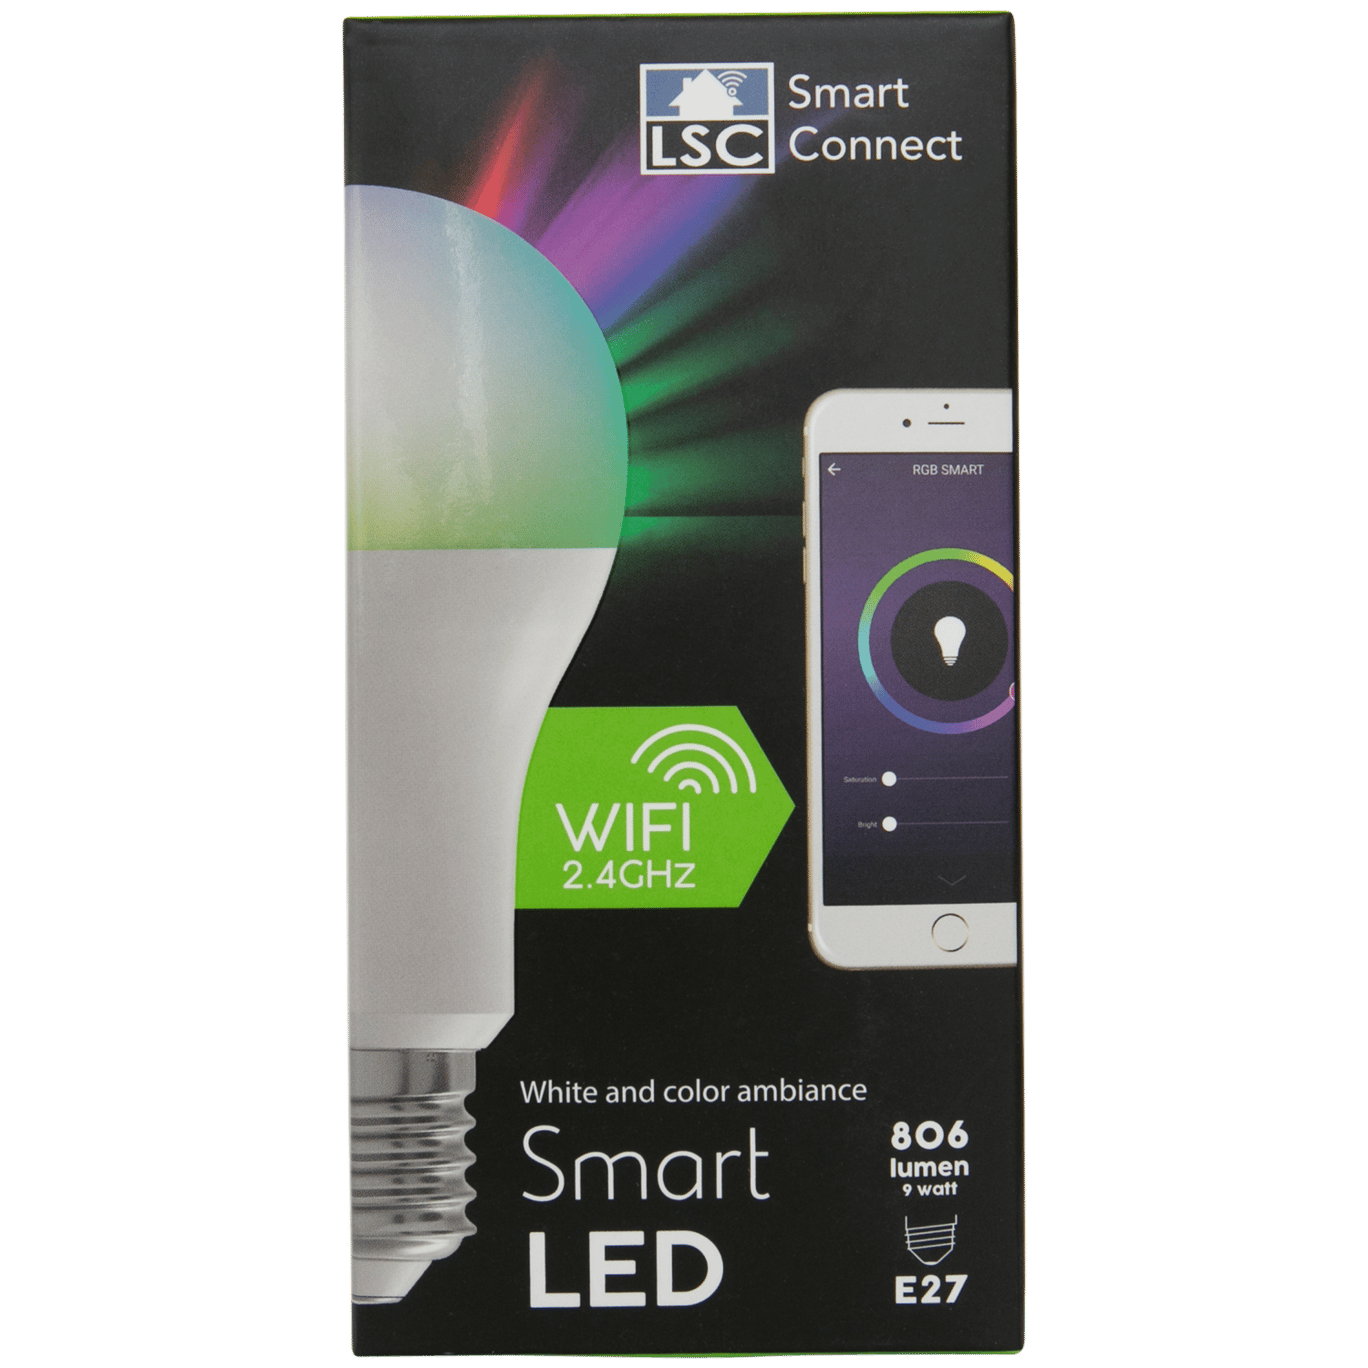 lsc smart connect slimme multicolor ledlamp action com